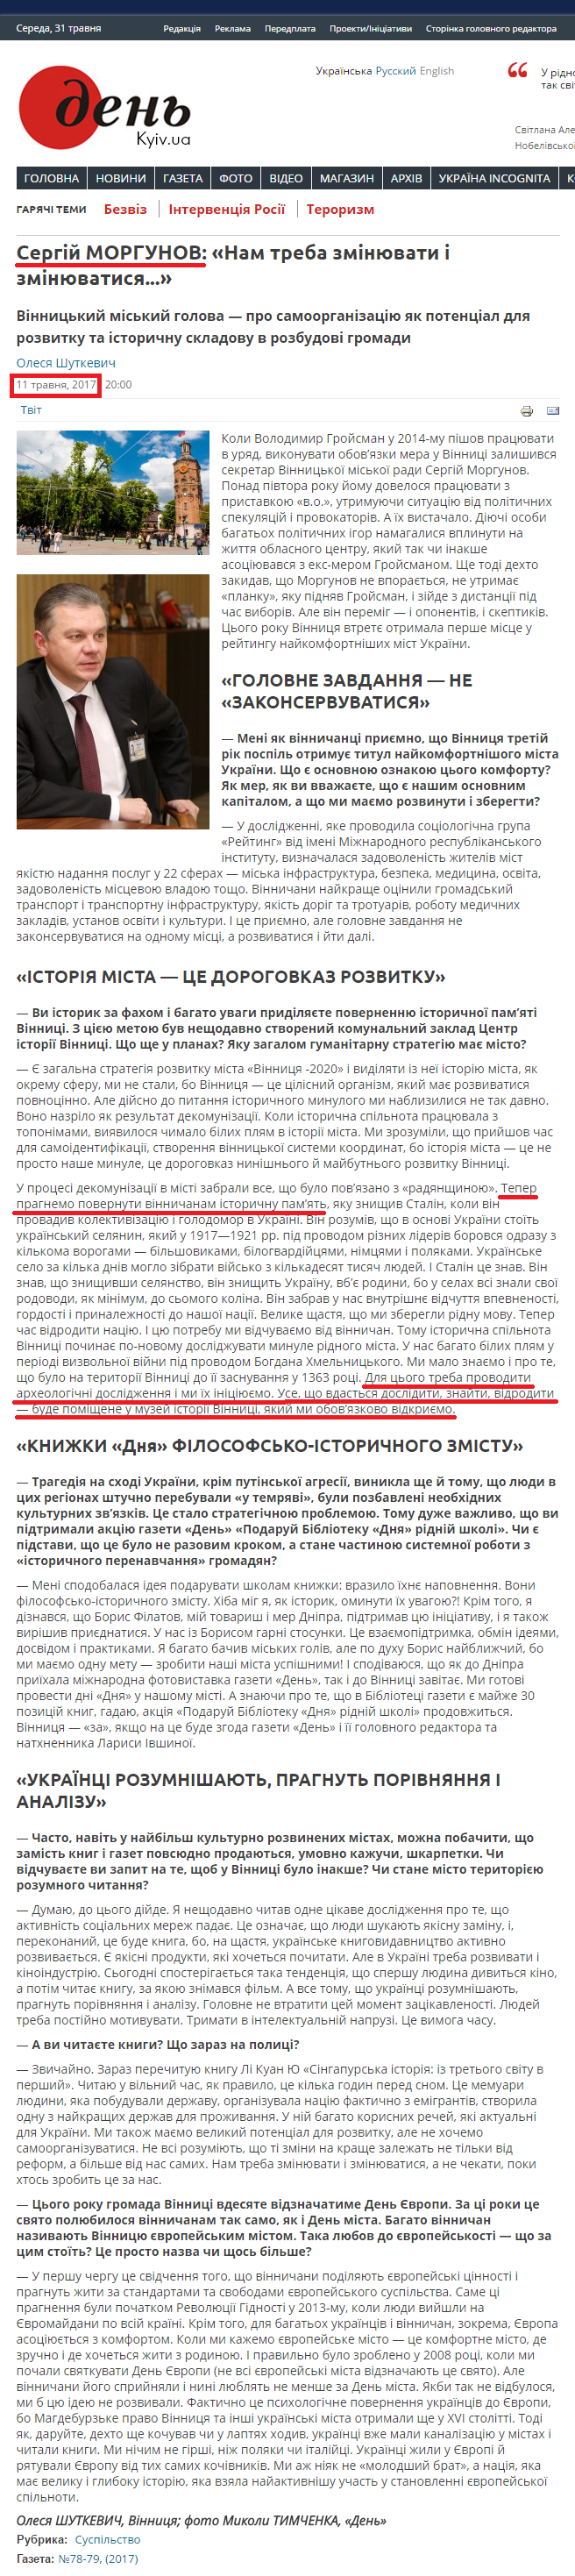 https://day.kyiv.ua/uk/article/cuspilstvo/sergiy-morgunov-nam-treba-zminyuvaty-i-zminyuvatysya